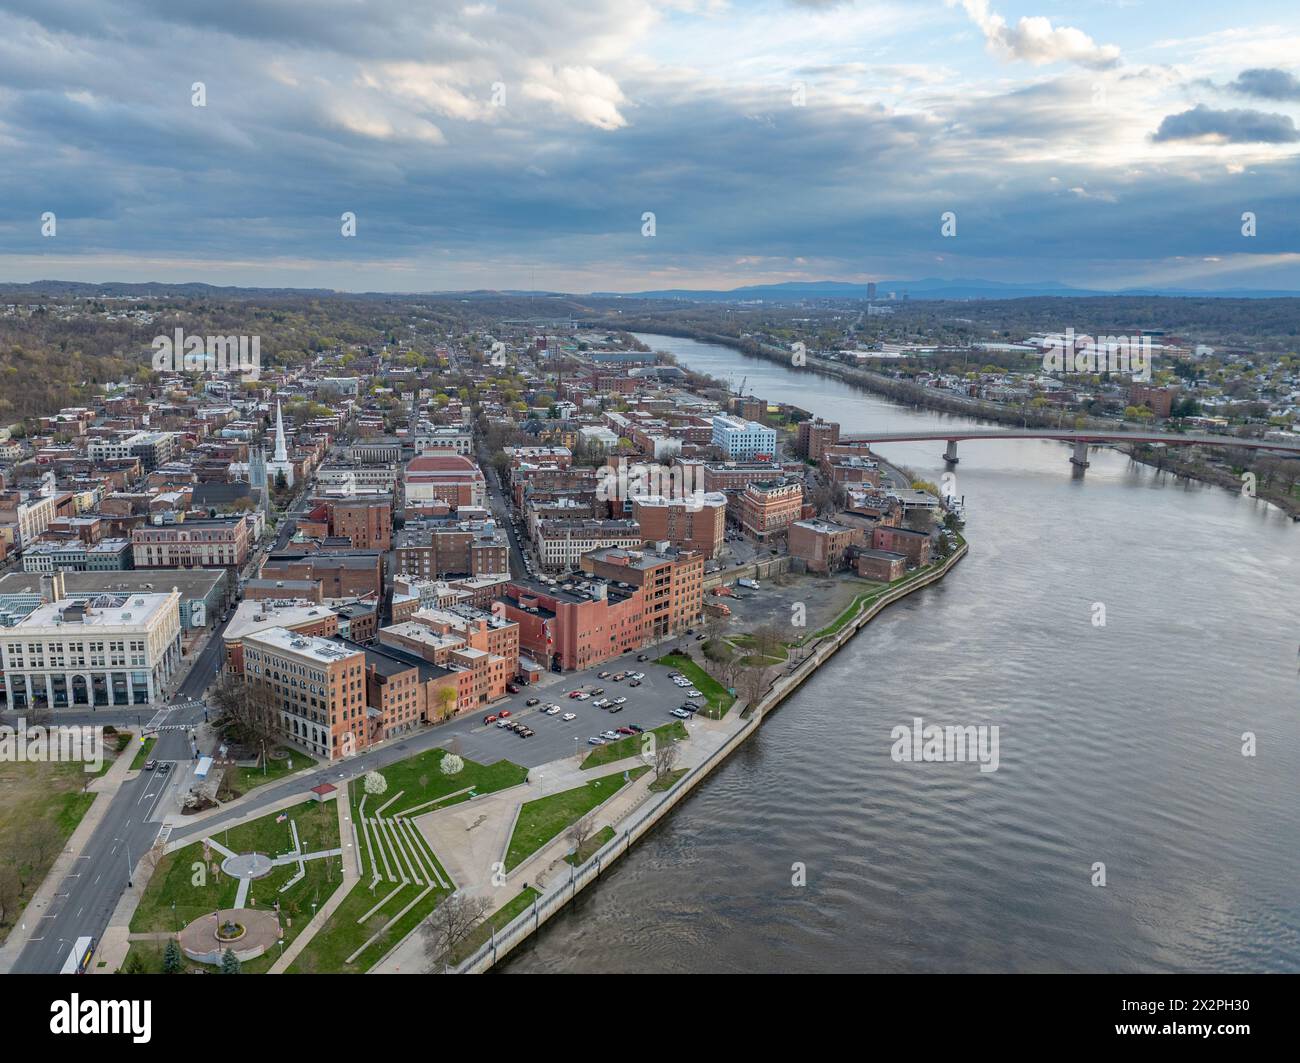 Vue aérienne printanière en fin d'après-midi du centre-ville de Troy, NY situé sur la rivière Hudson. Banque D'Images